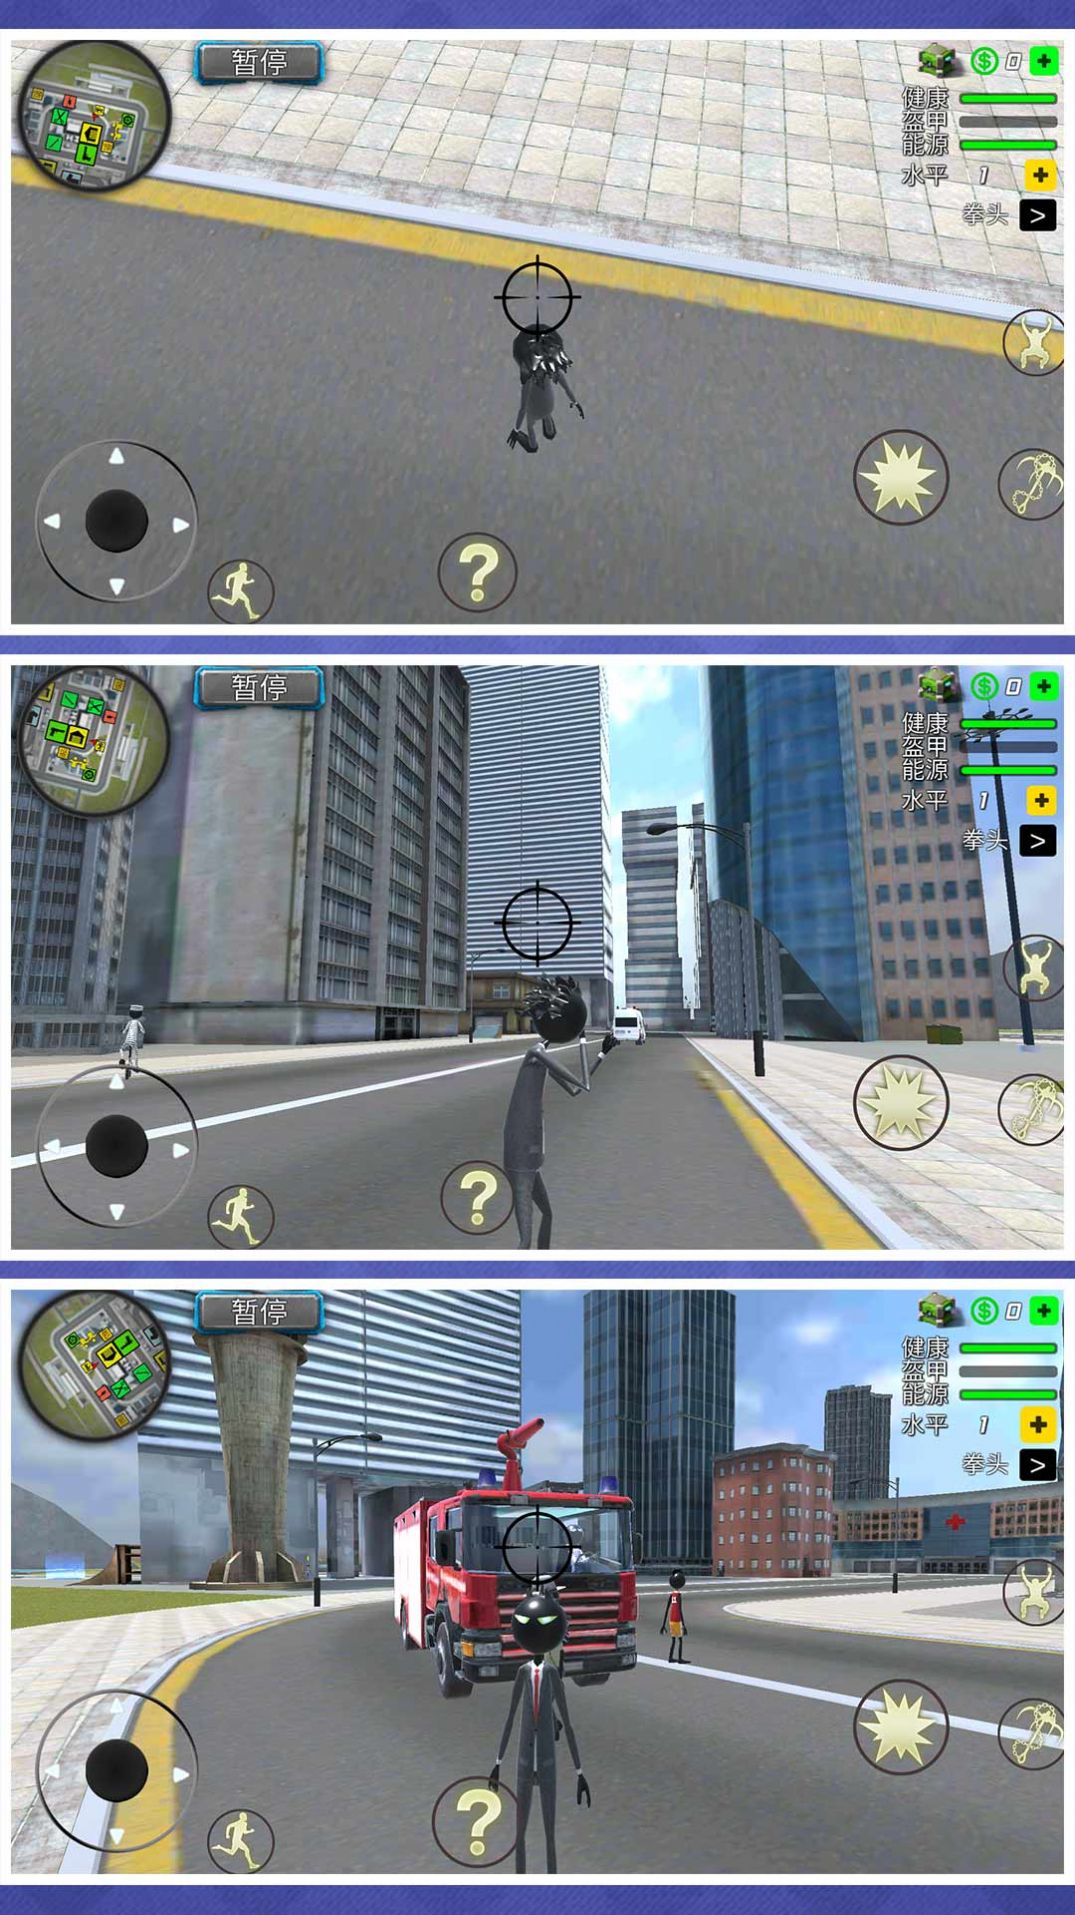 狂暴都市逃生模拟游戏手机版下载图片1